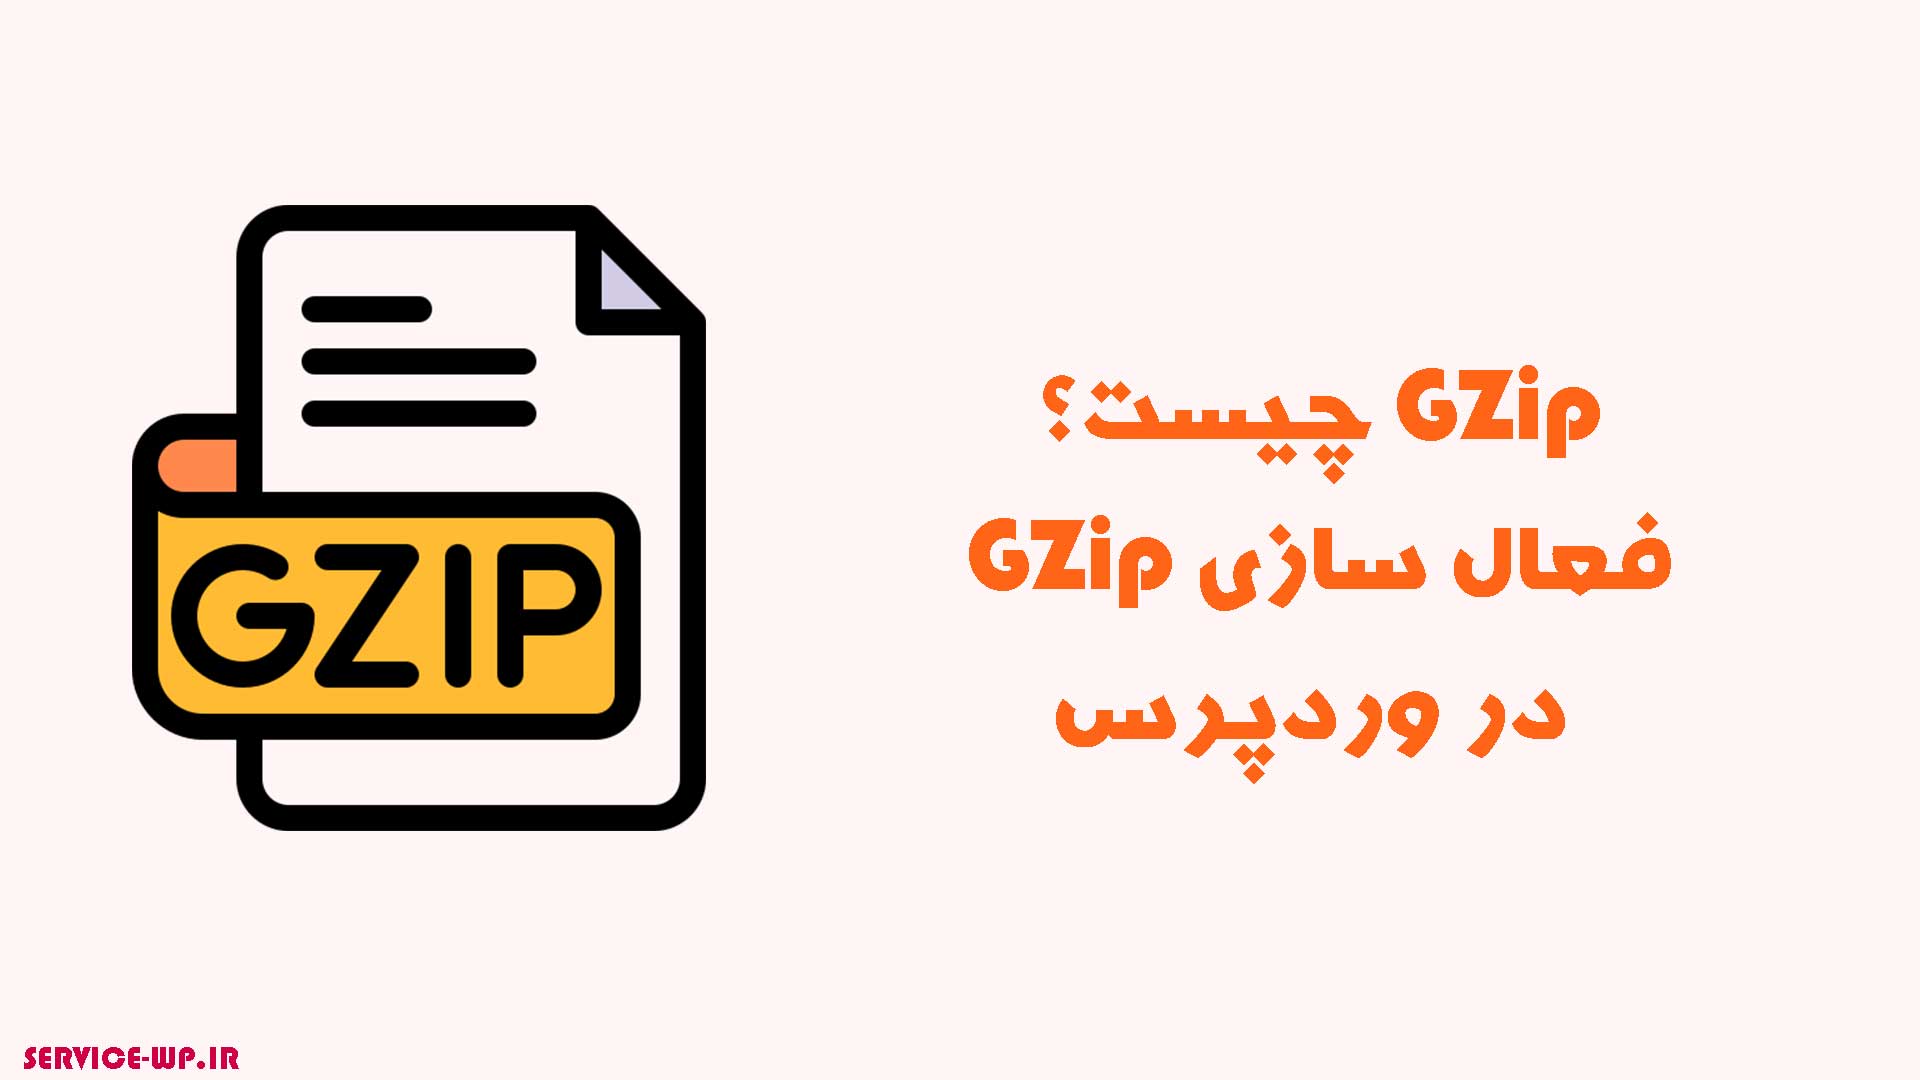 فعال سازی GZip در وردپرس